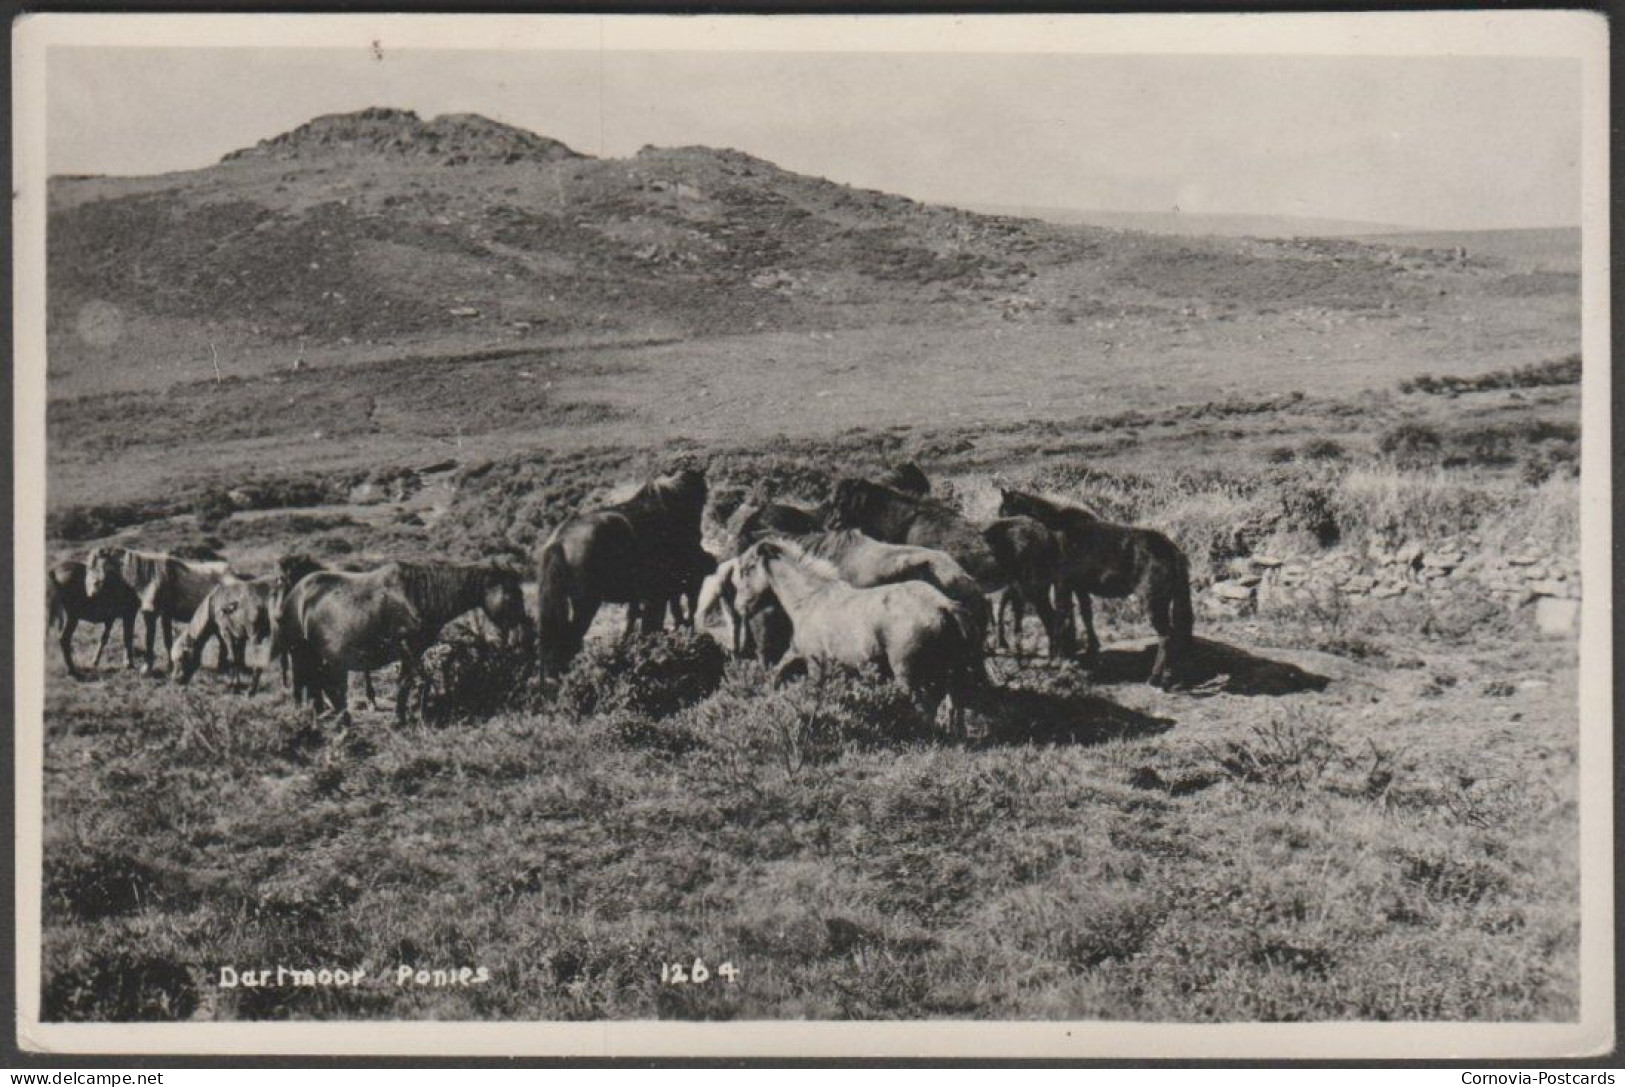 Dartmoor Ponies, Devon, C.1930 - Kenneth E Ruth RP Postcard - Dartmoor